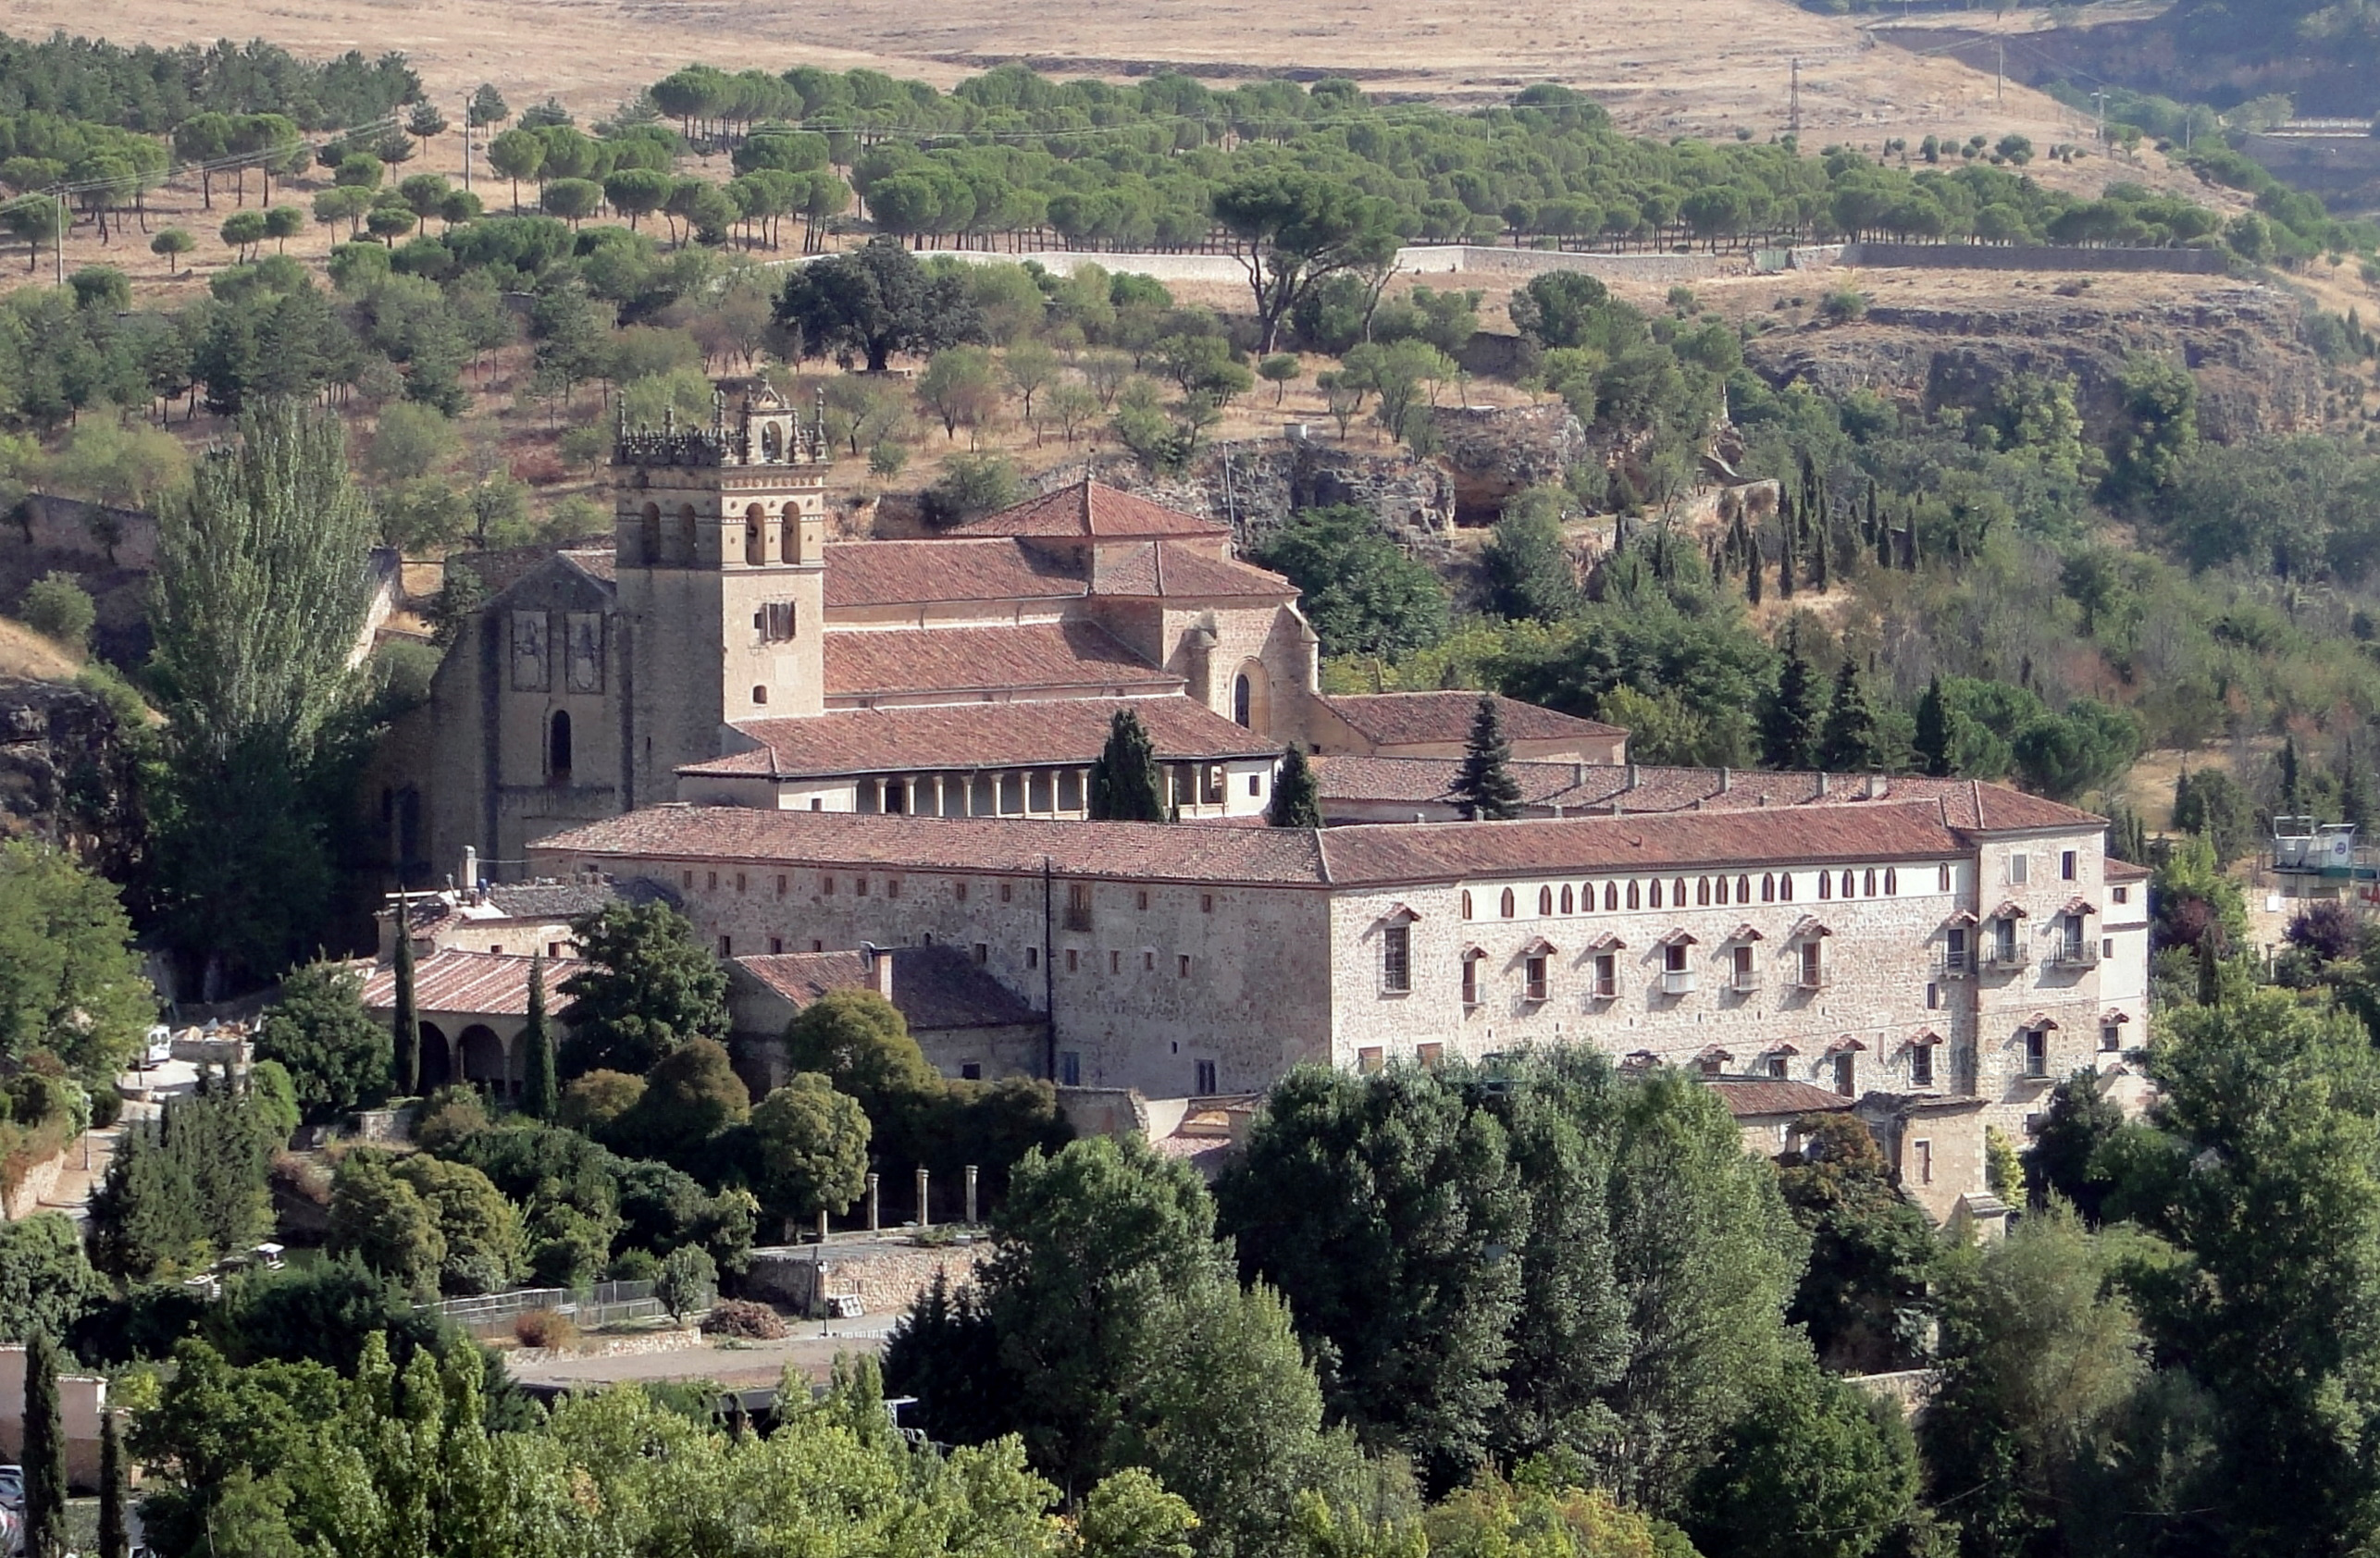 Monastery of Santa Maria del Parral